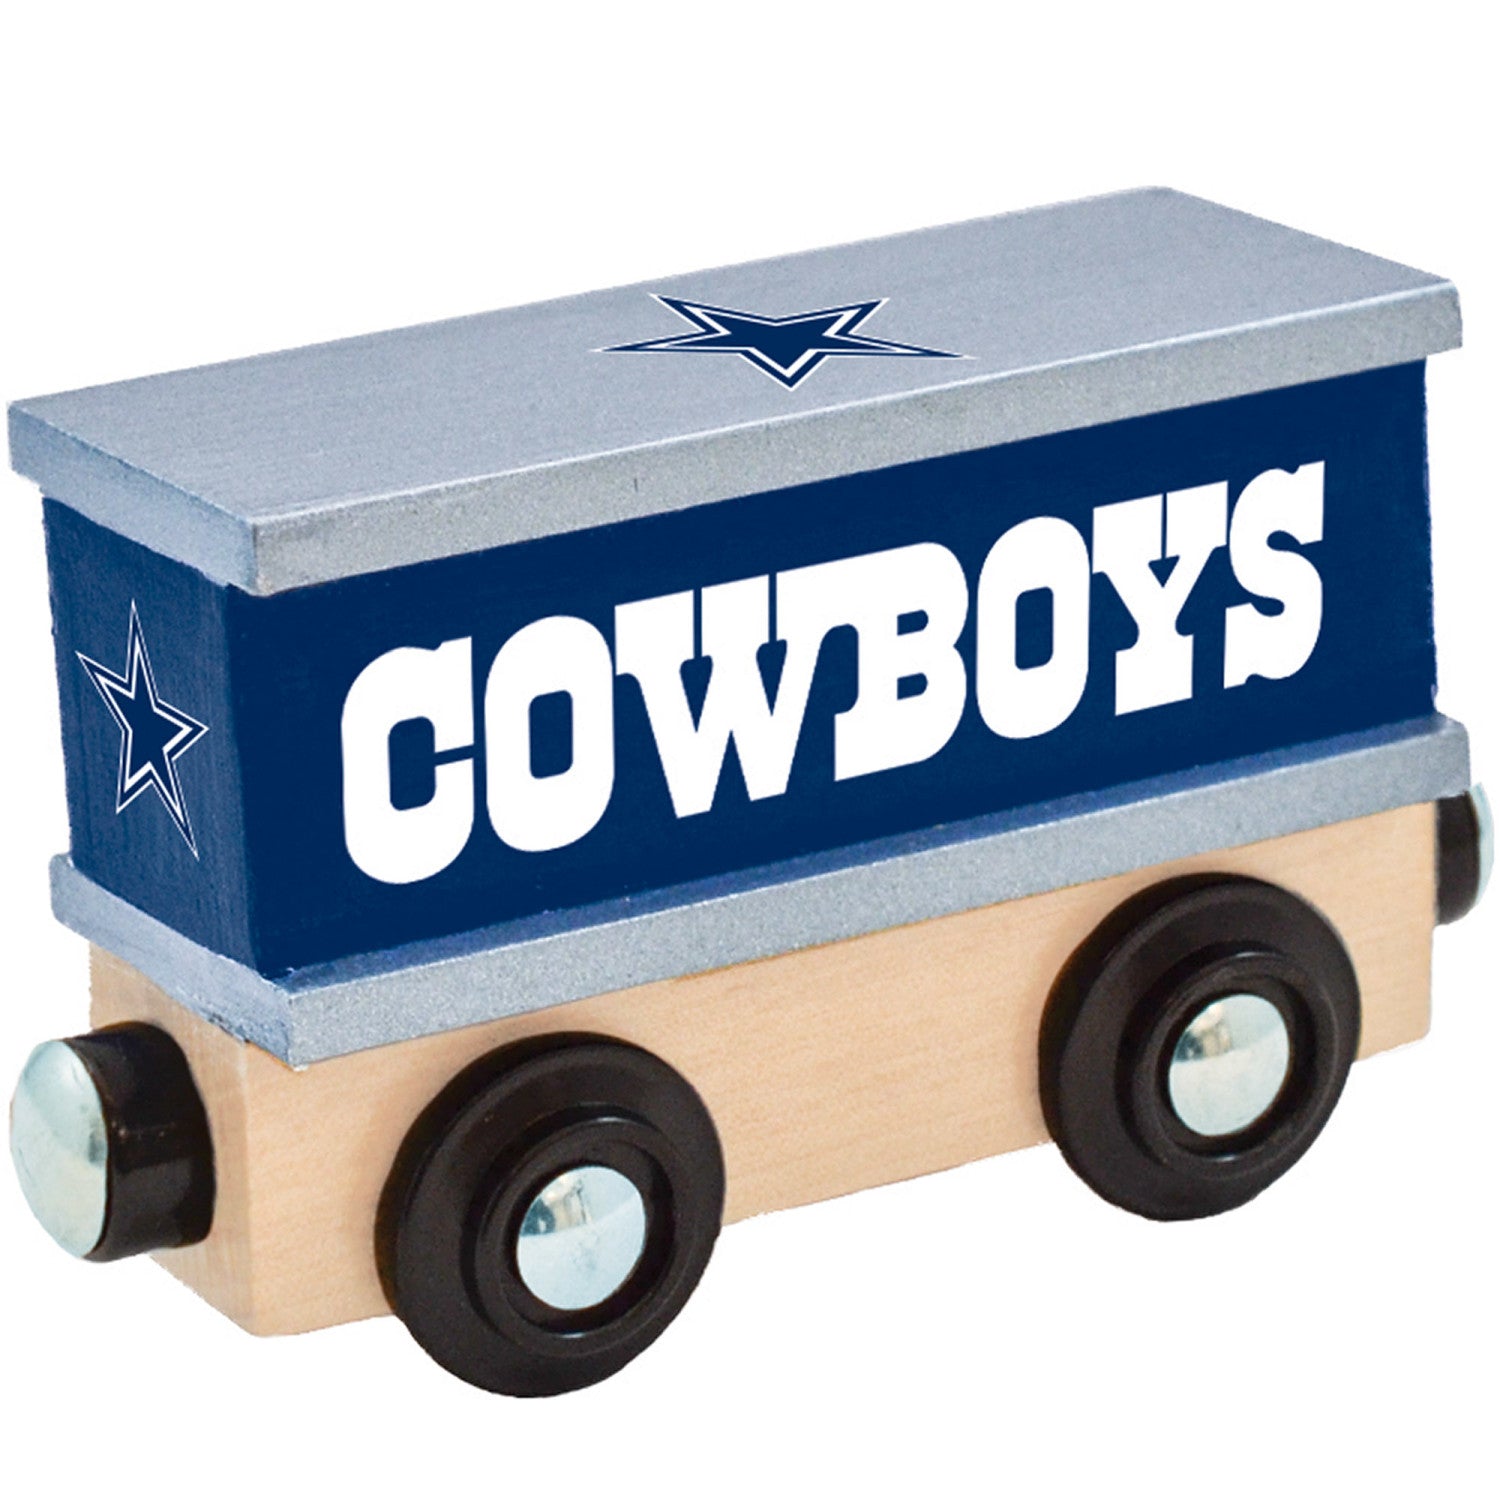 Dallas Cowboys Toy Train Box Car